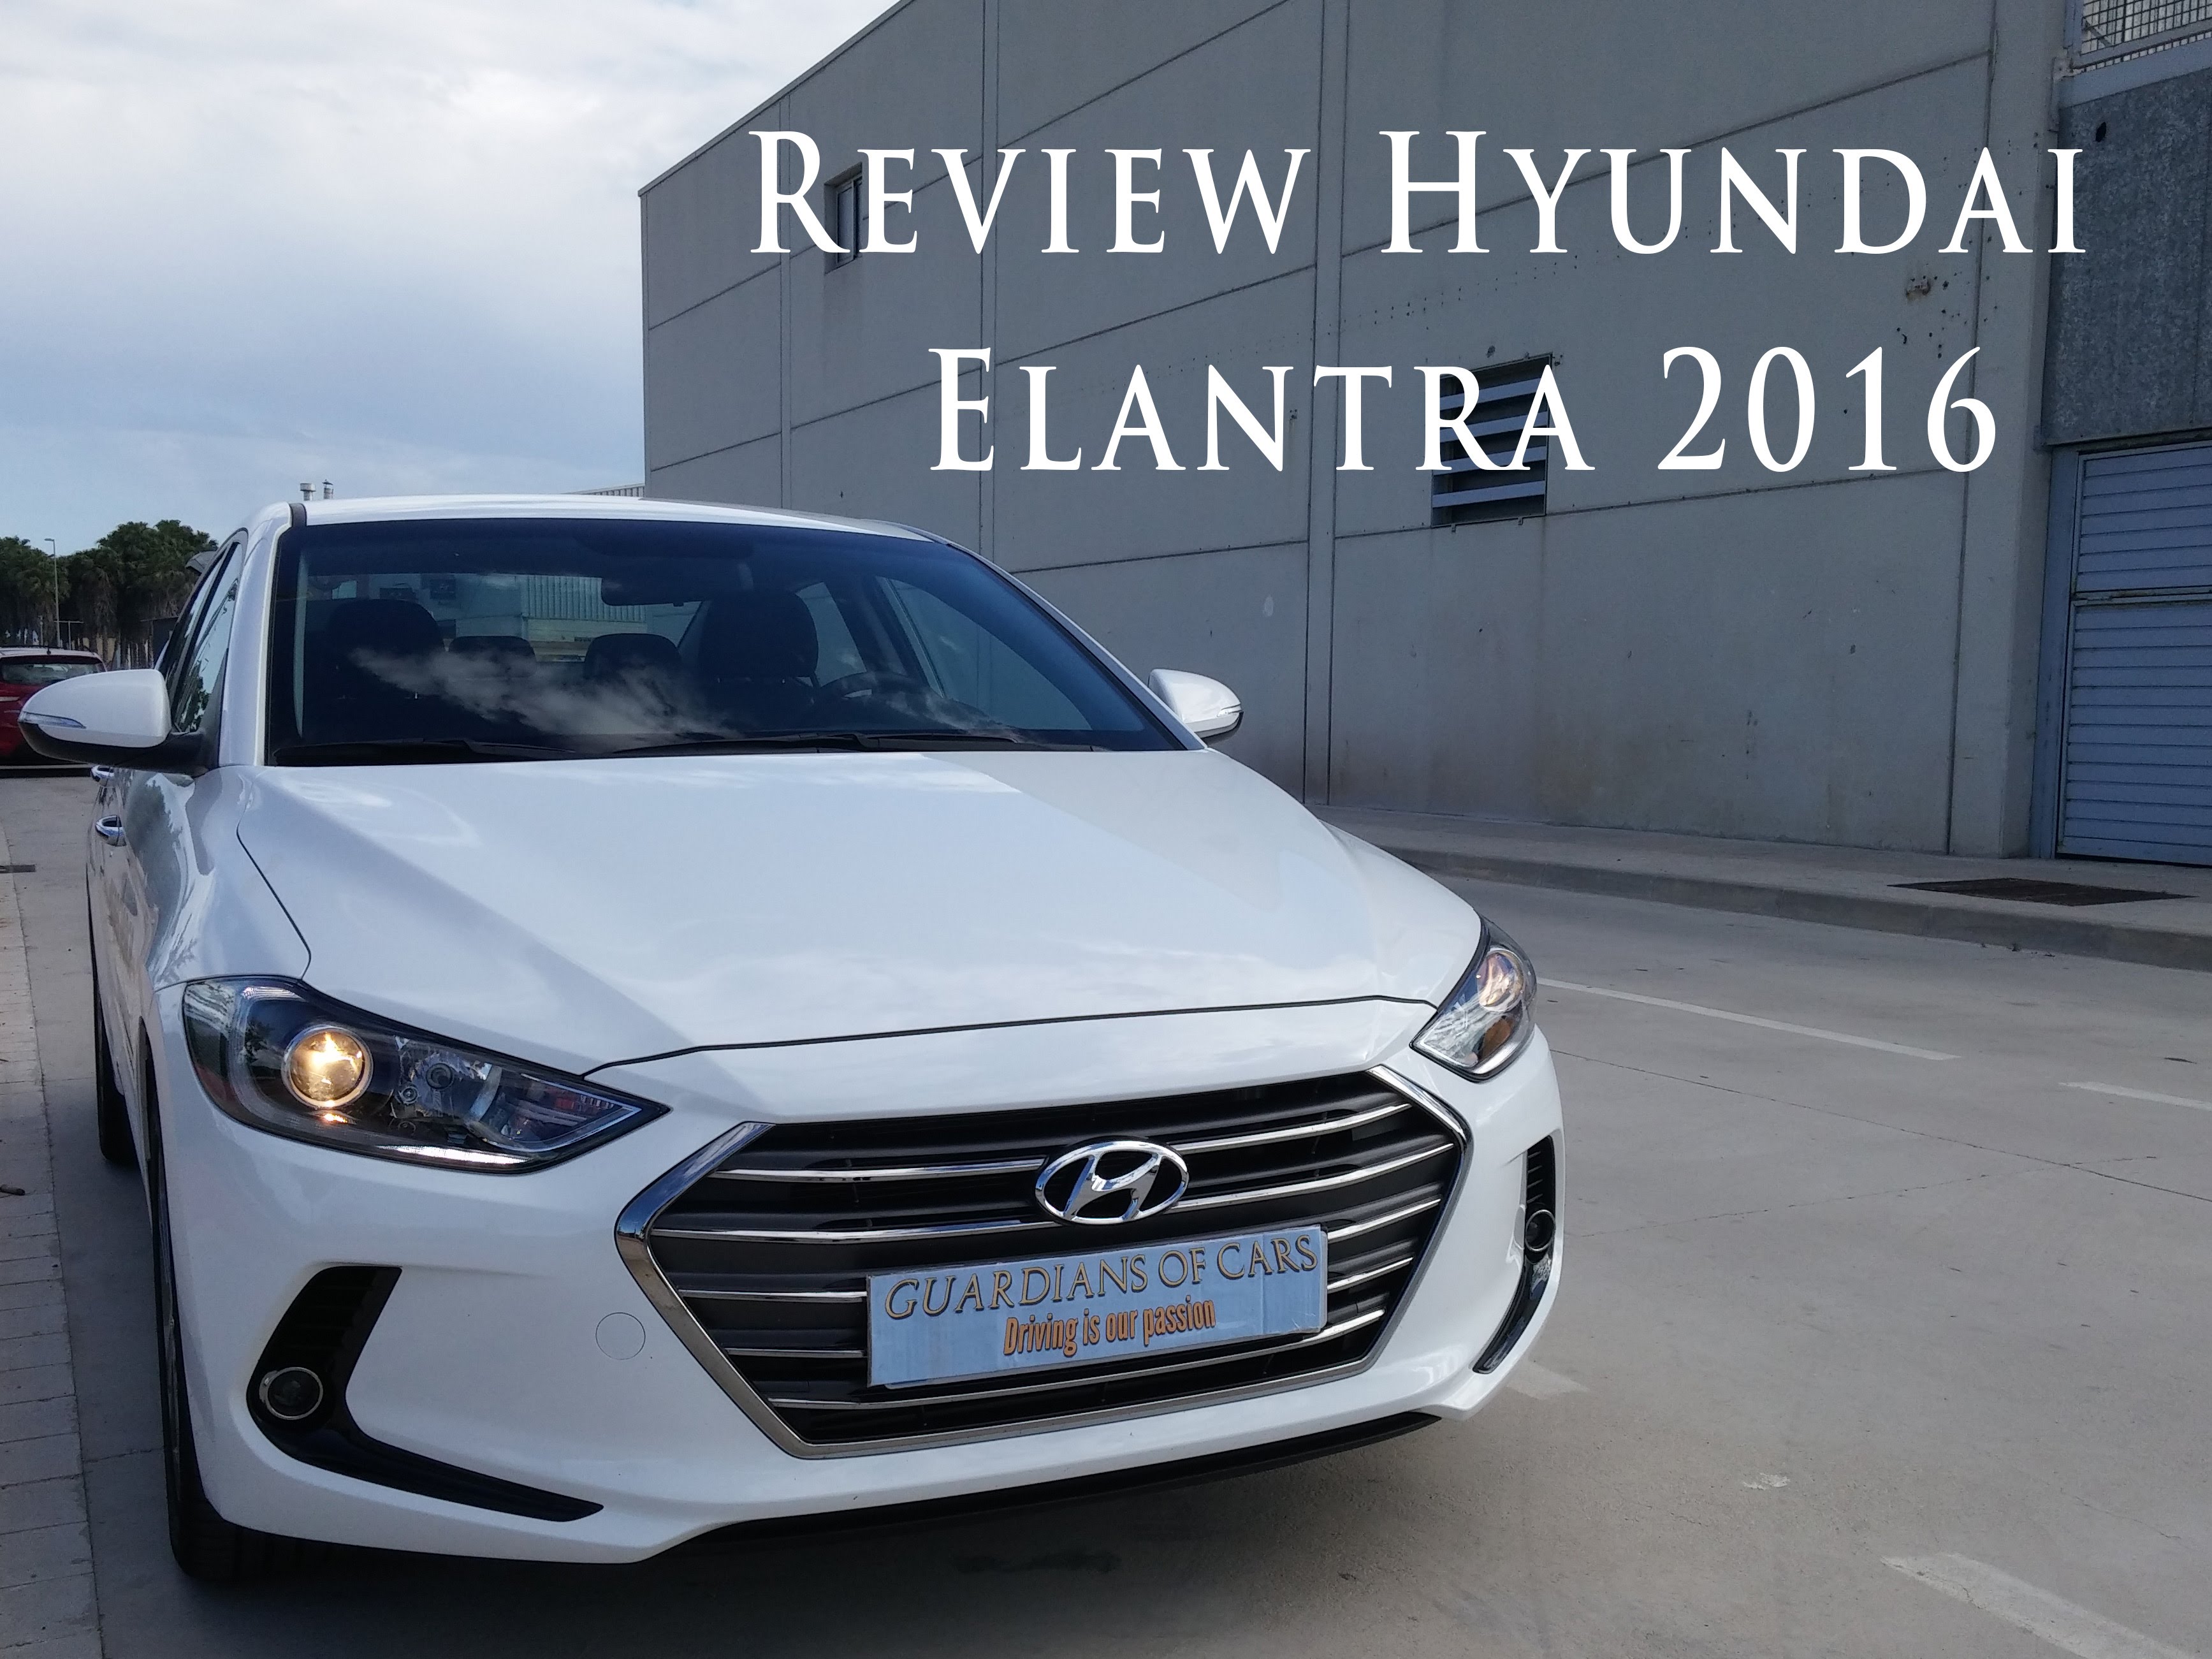 Review Hyundai Elantra Techno 2016 de Pere J. Pastor